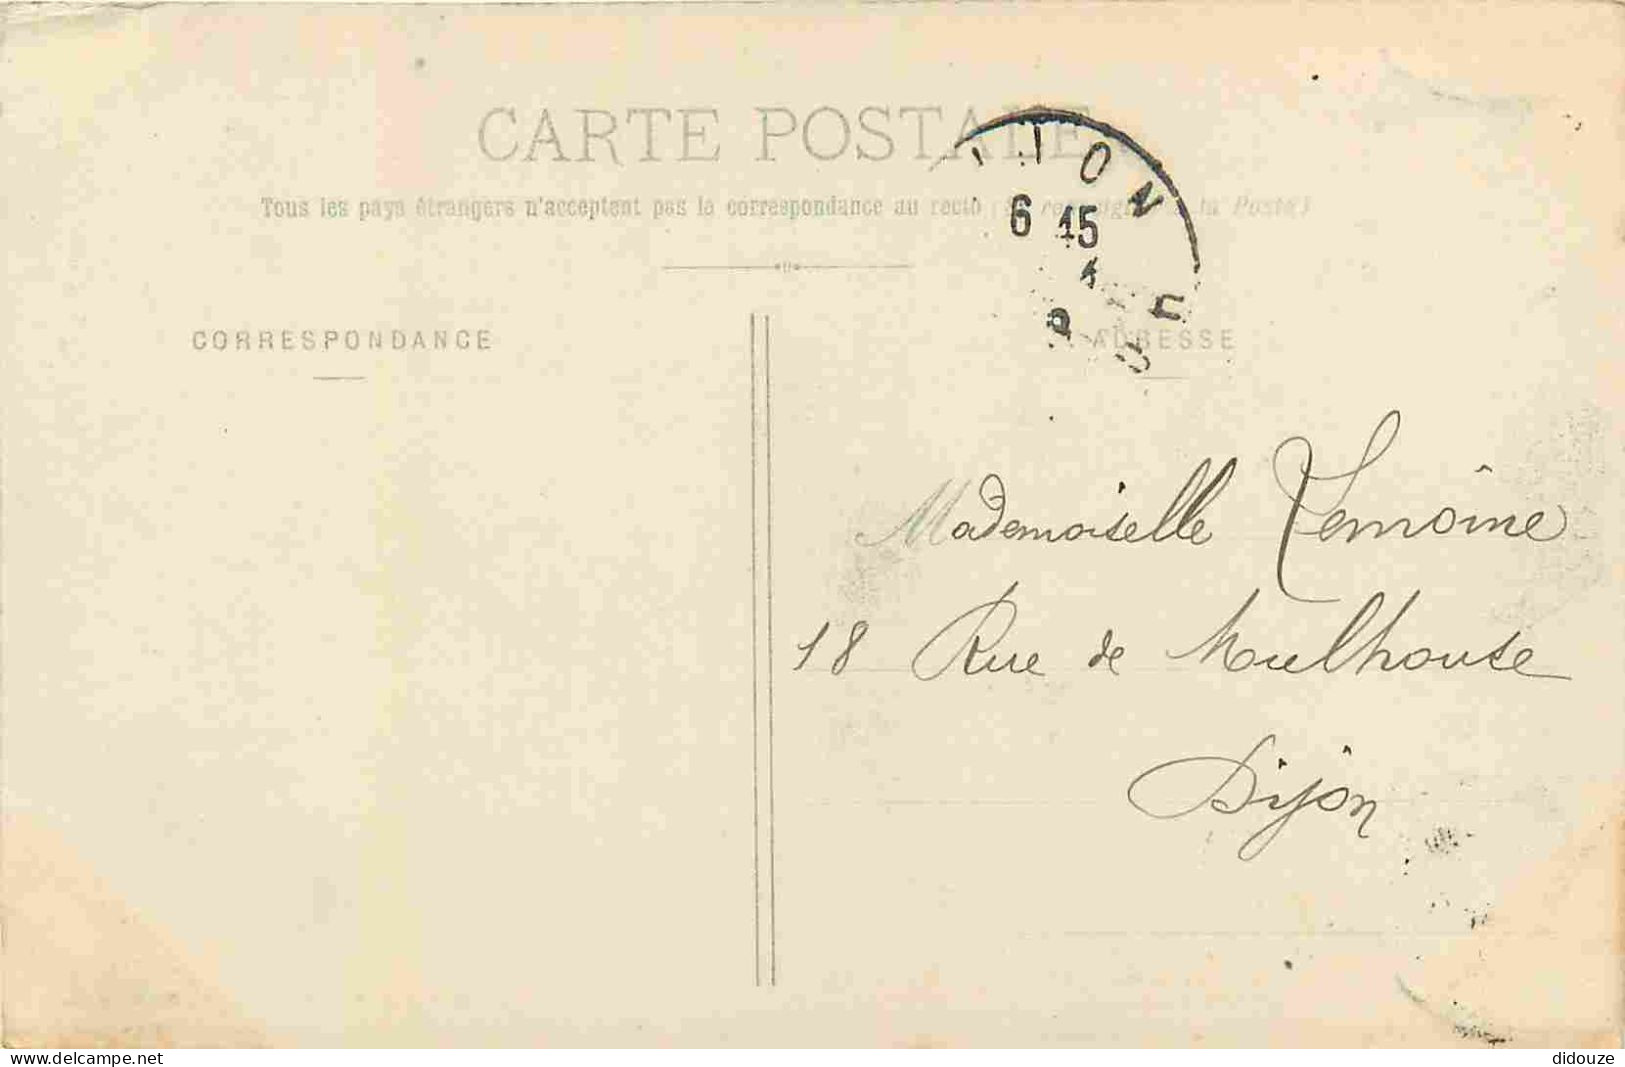 38 - Grenoble - Place Victor Hugo Et Le Fort De La Bastille - CPA - Oblitération Ronde De 1906 - Voir Scans Recto-Verso - Grenoble